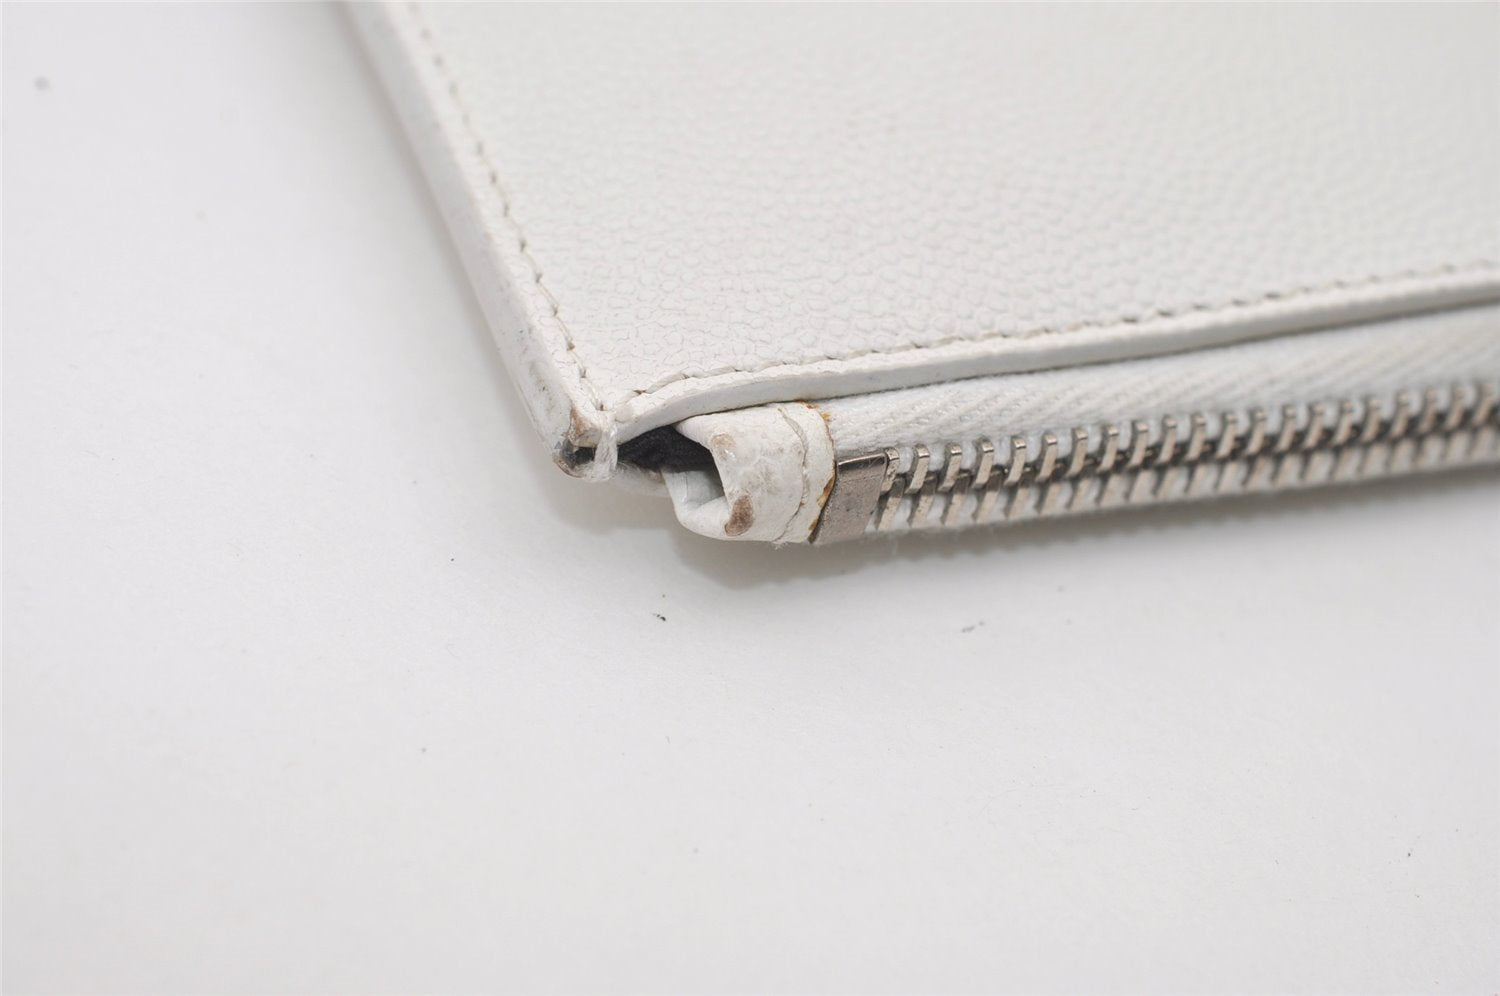 Authentic SAINT LAURENT Clutch Hand Bag Purse Leather White TGR397294 YSL 2068J